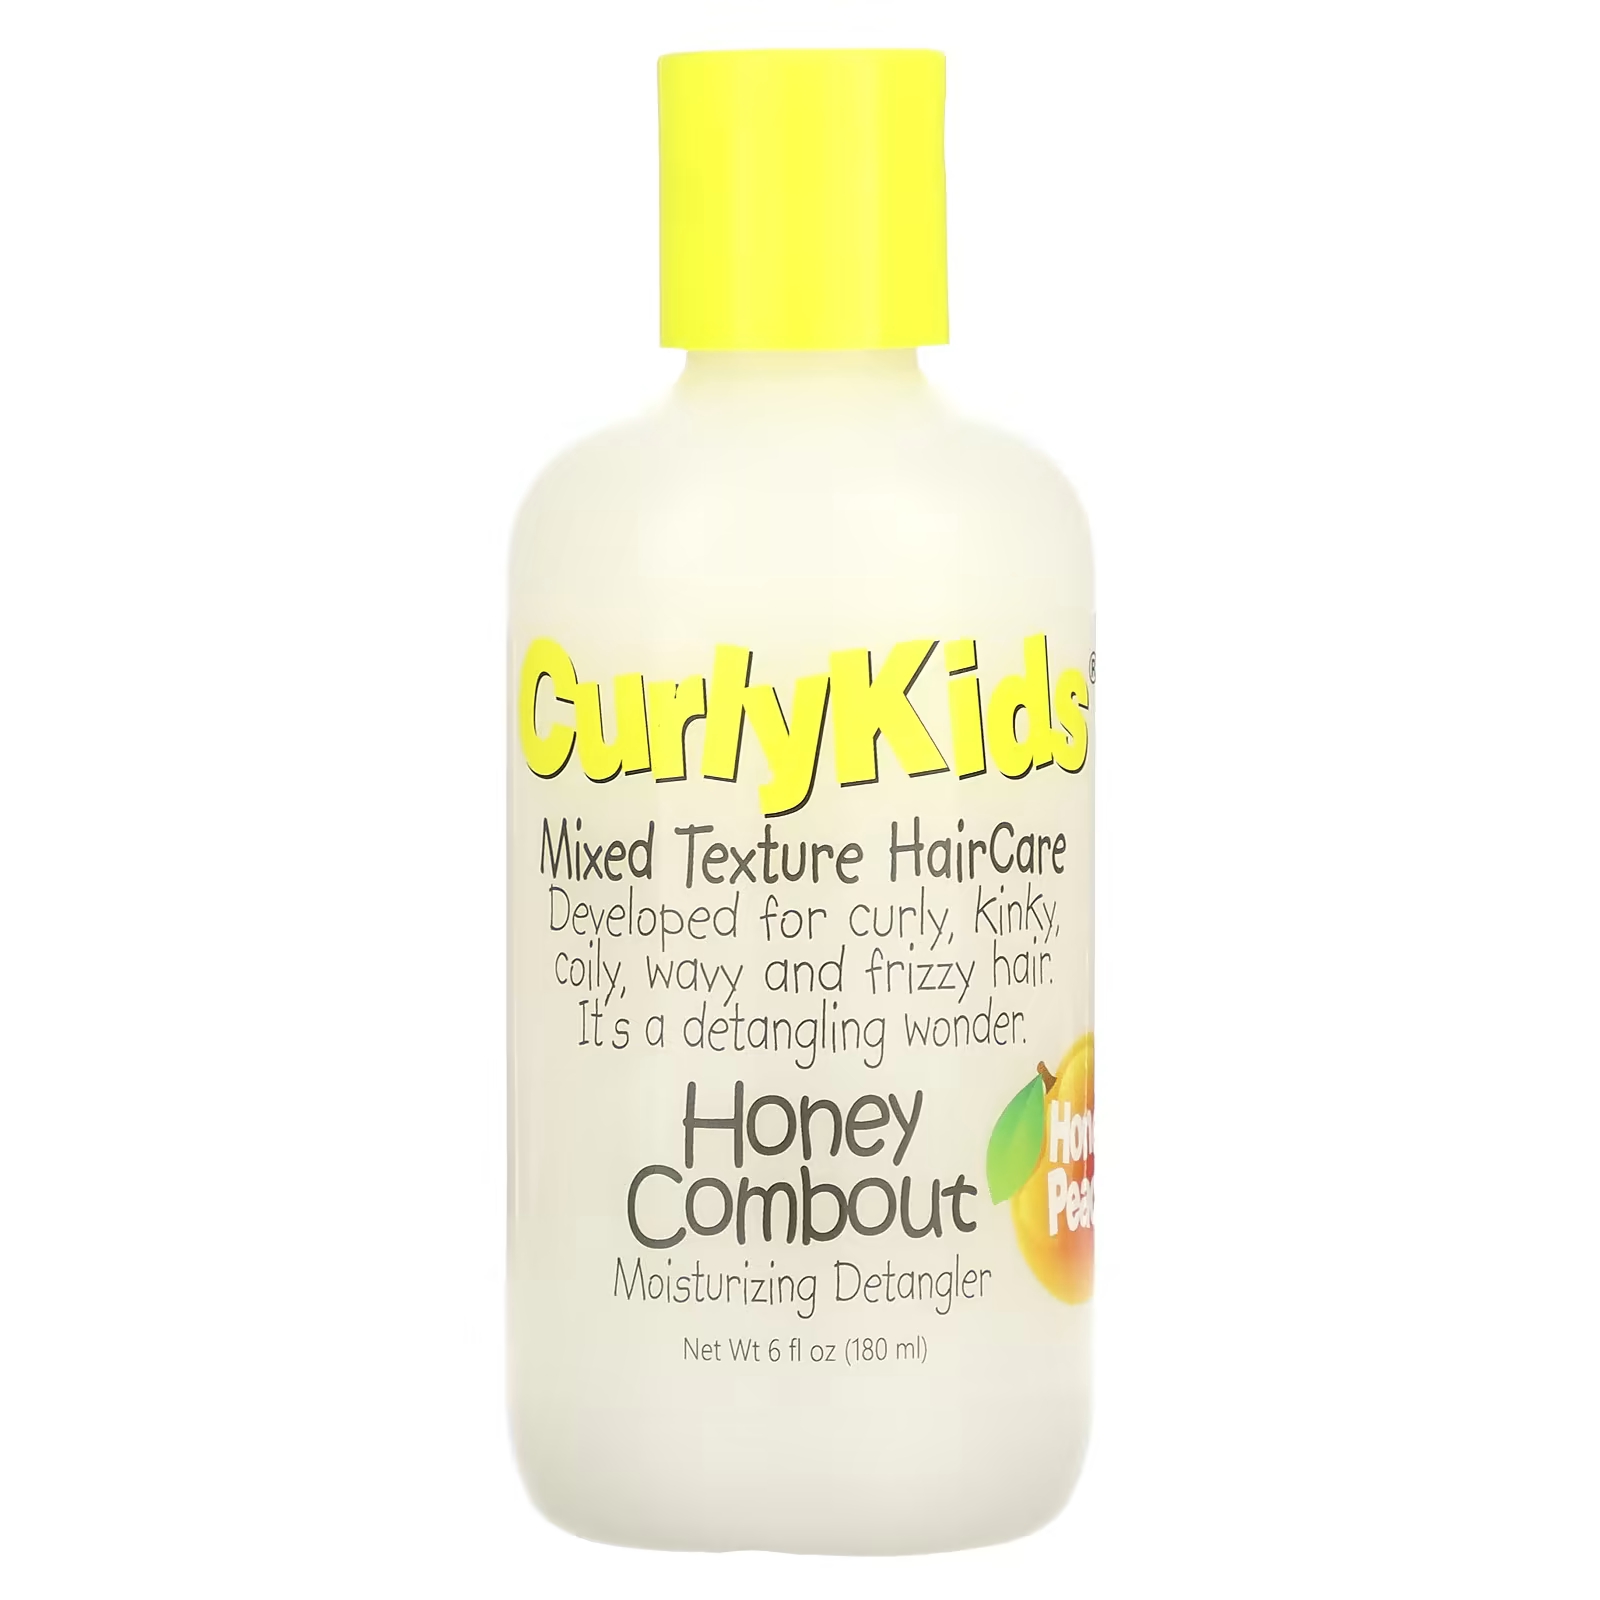 CurlyKids Honey Combout Увлажняющее средство для расчесывания волос Honey Peach, 6 жидких унций (180 мл) curlykids уход за волосами смешанной текстуры гель для вьющихся волос контроль легкости 170 г 6 унций